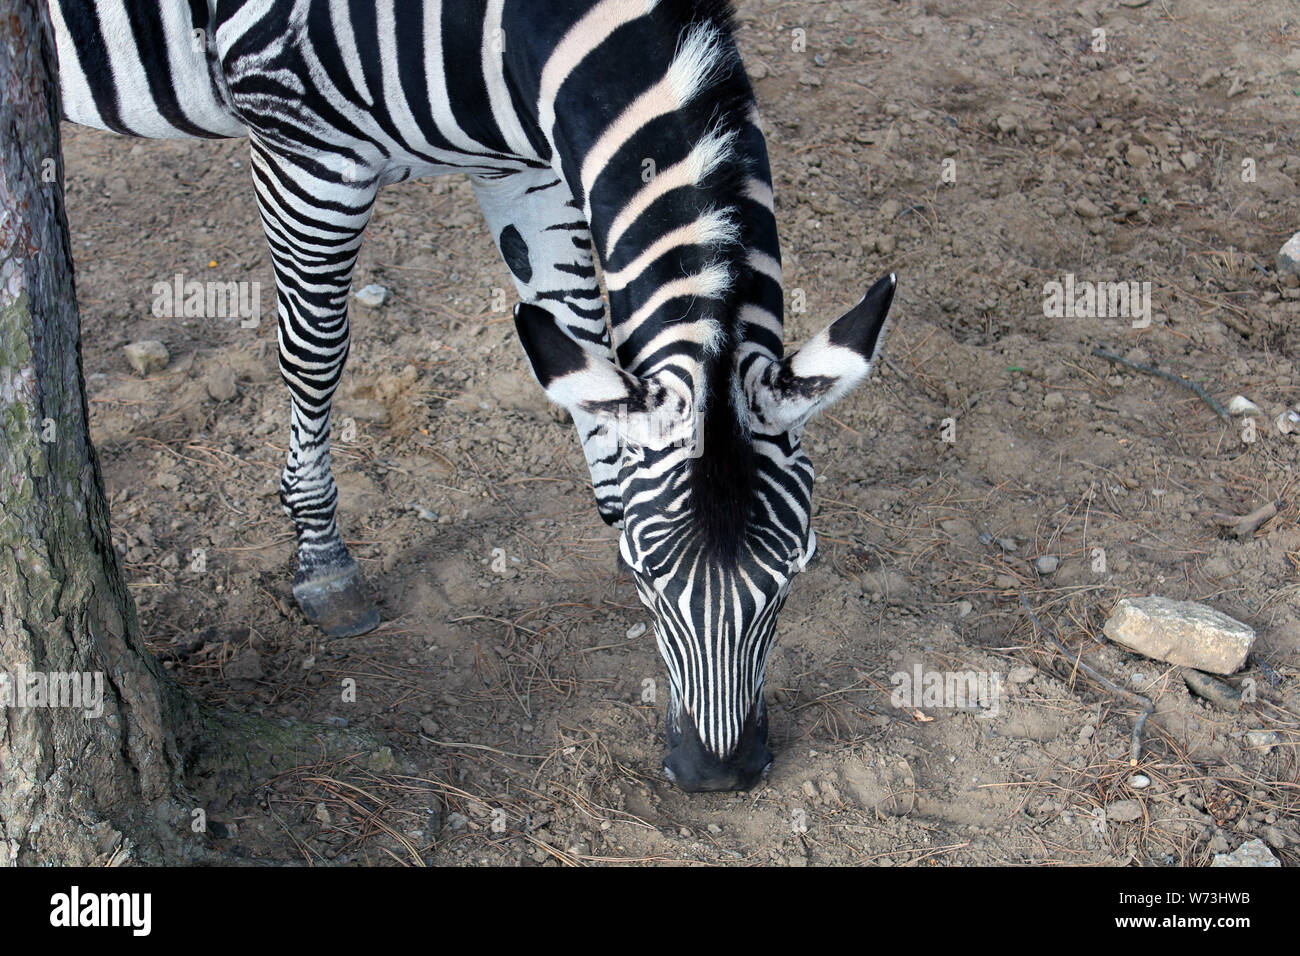 Angolo di alta vista di una zebra metà del corpo, della testa e del collo. La Zebra è il pascolo, accanto ad un tronco di albero. Foto Stock